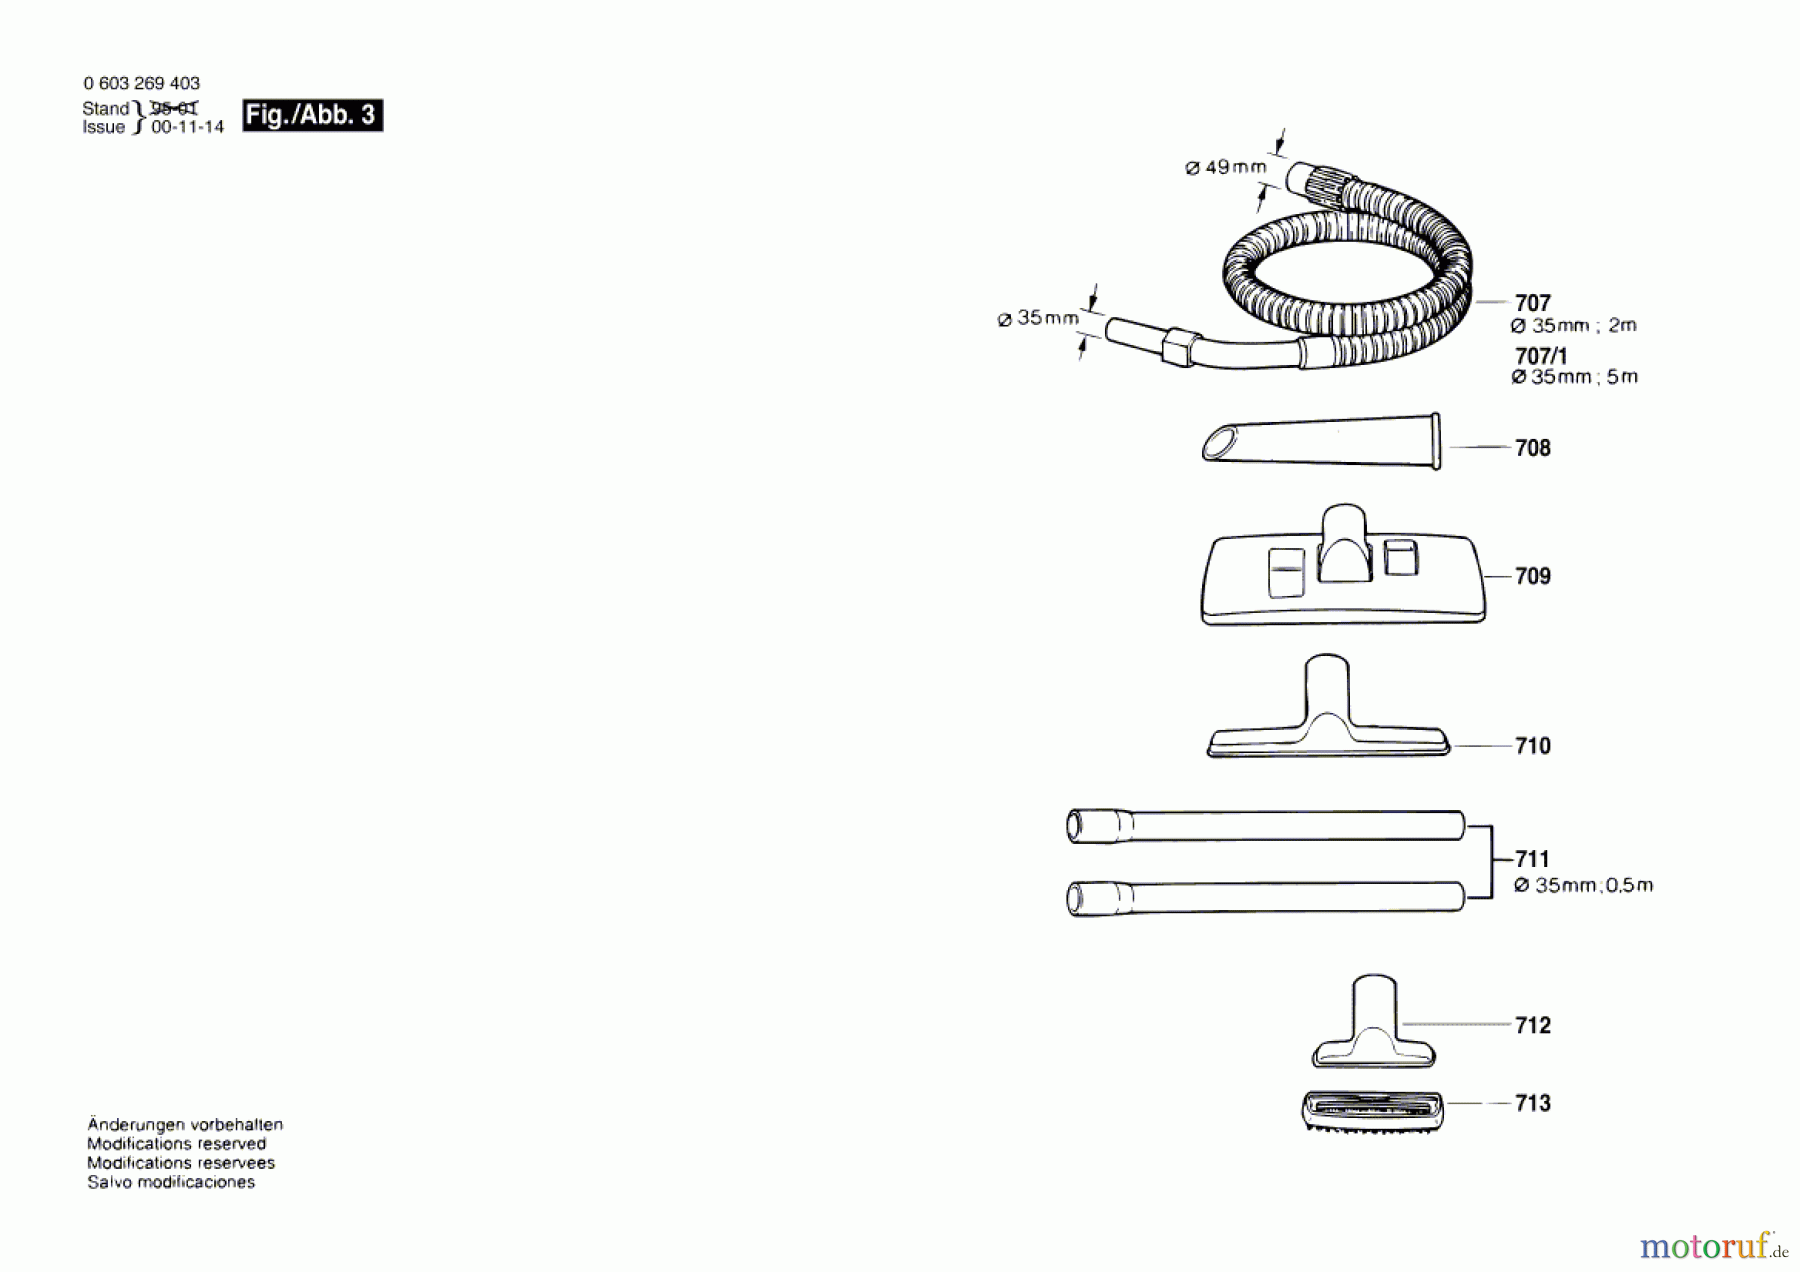  Bosch Werkzeug Allzwecksauger PAS 1000 F Seite 3